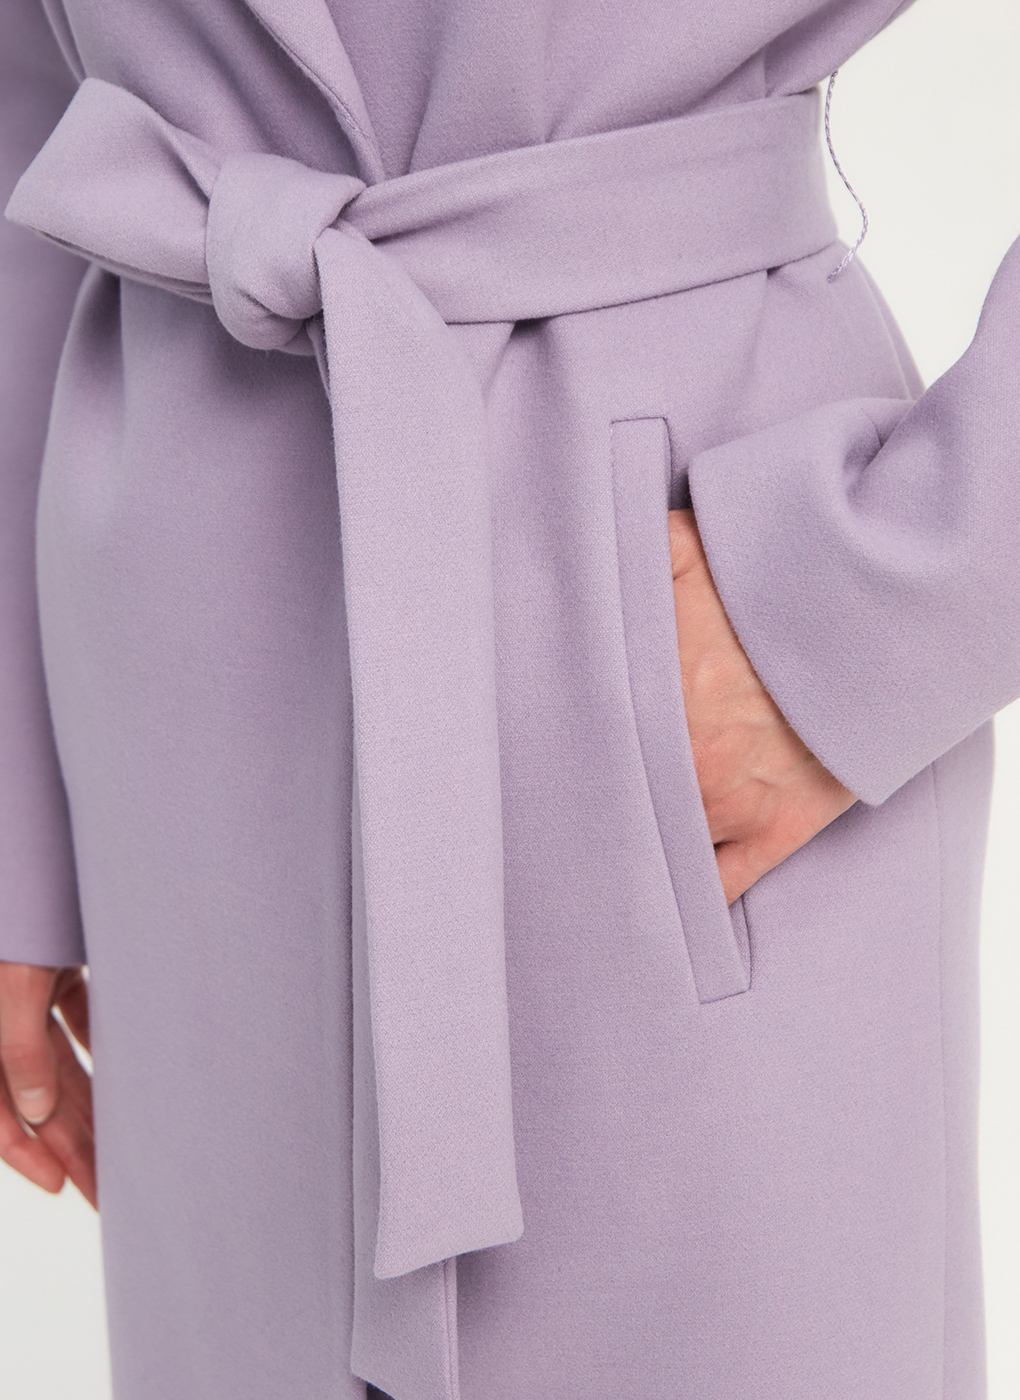 Пальто женское Giulia Rosetti 56204 фиолетовое 46 RU